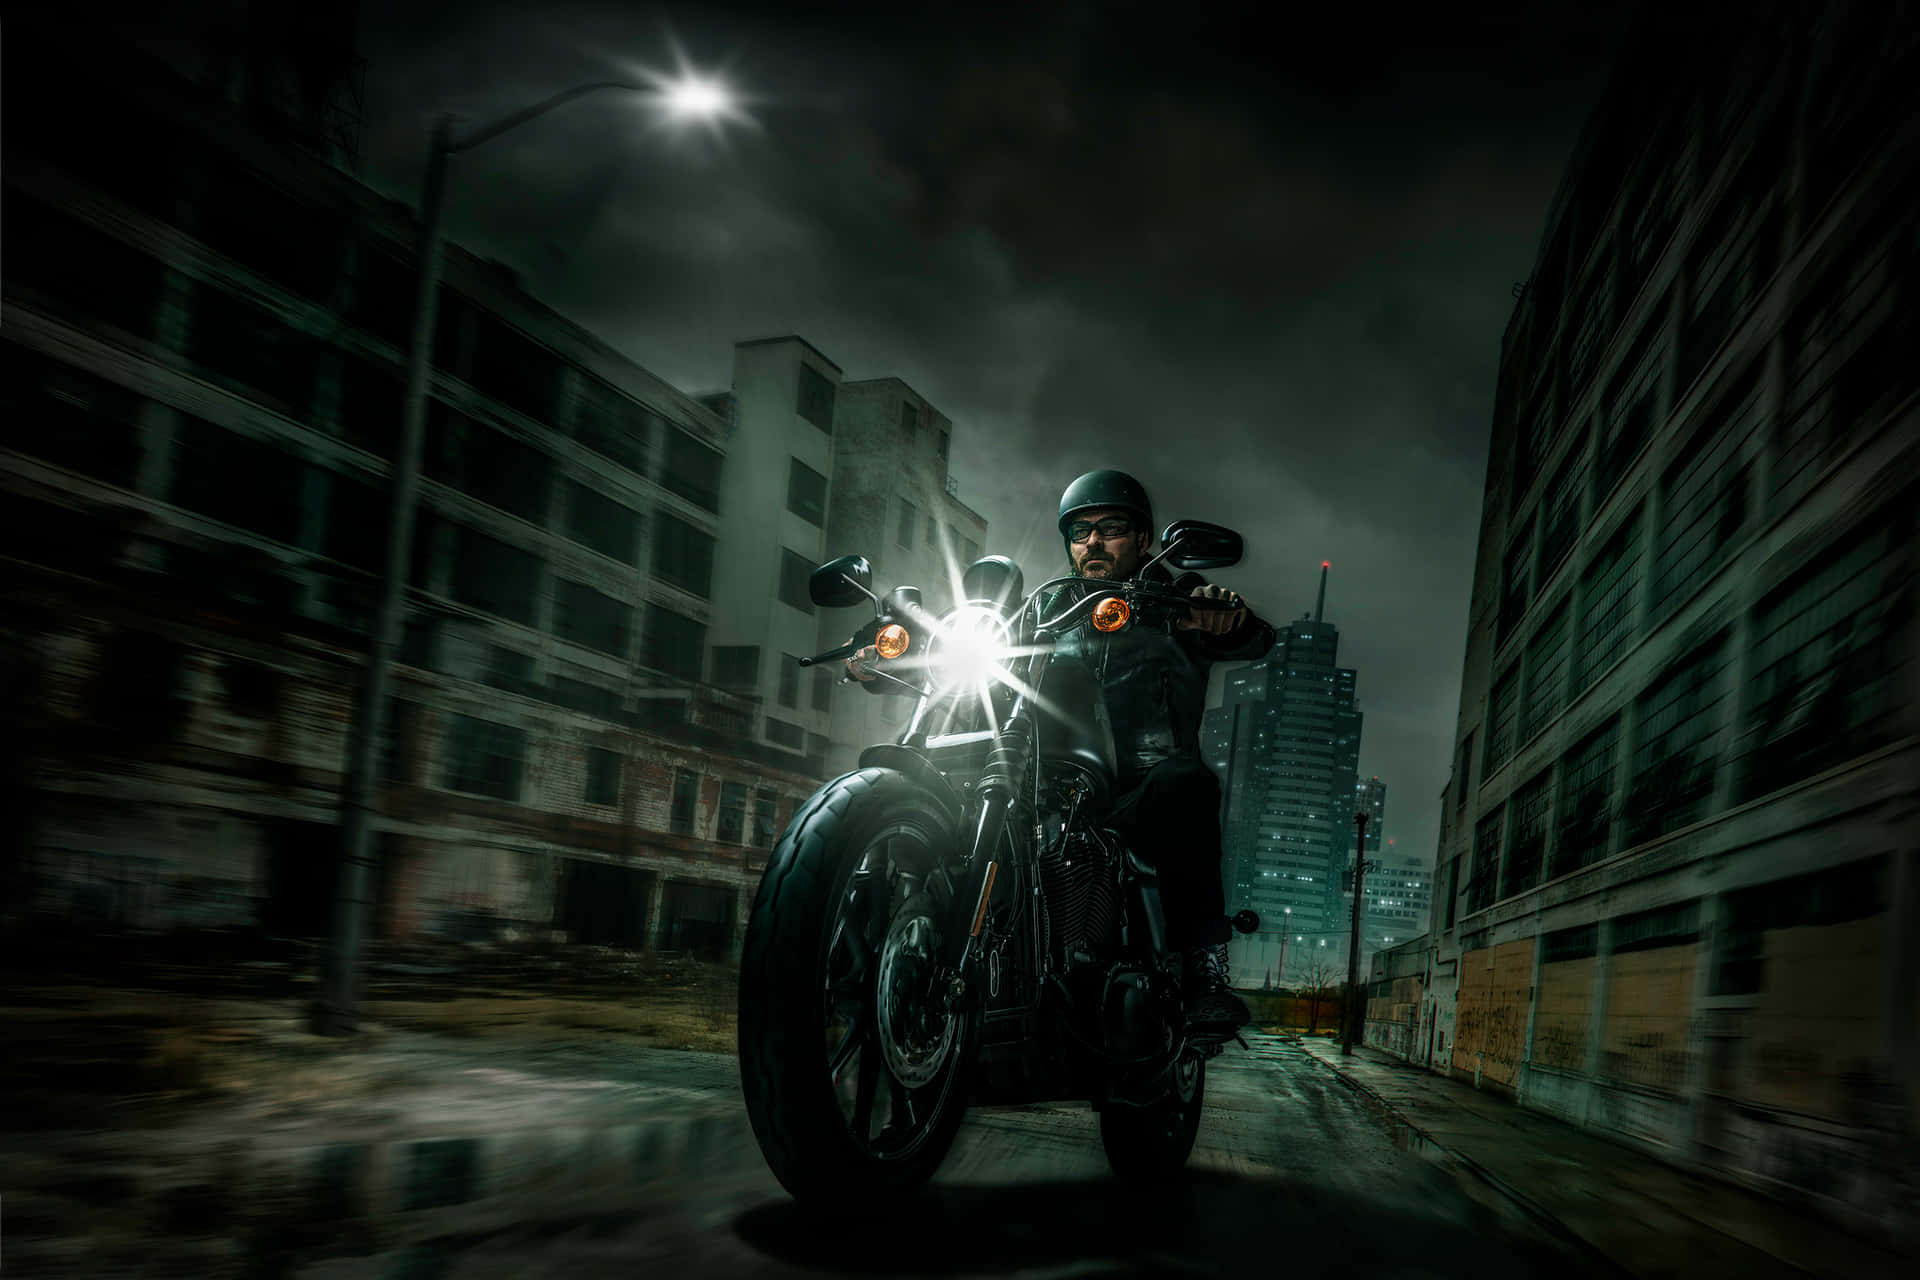 Hintergrundbildmit Harley Davidson Motorrad Und Einem Männlichen Fahrer